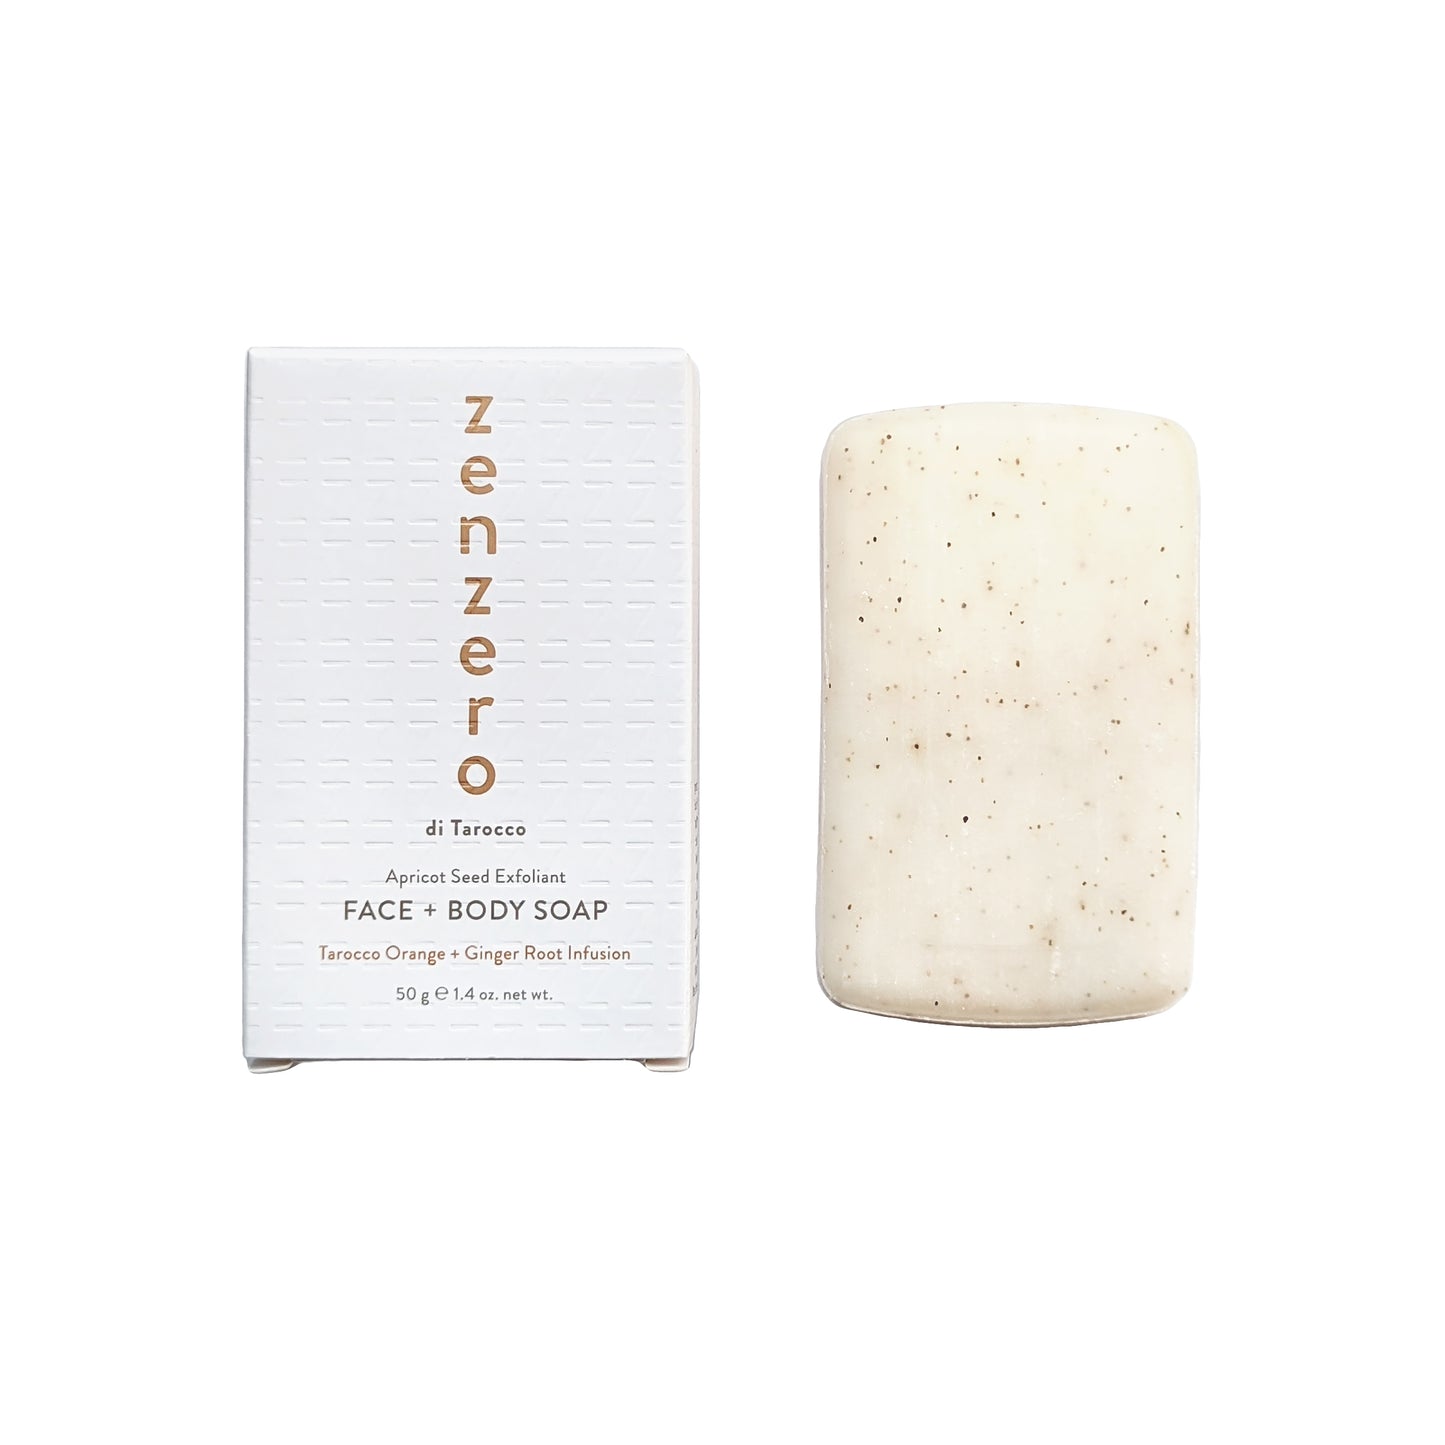 ZENZERO Face and Body Soap 50 g / 1.4 fl. oz.